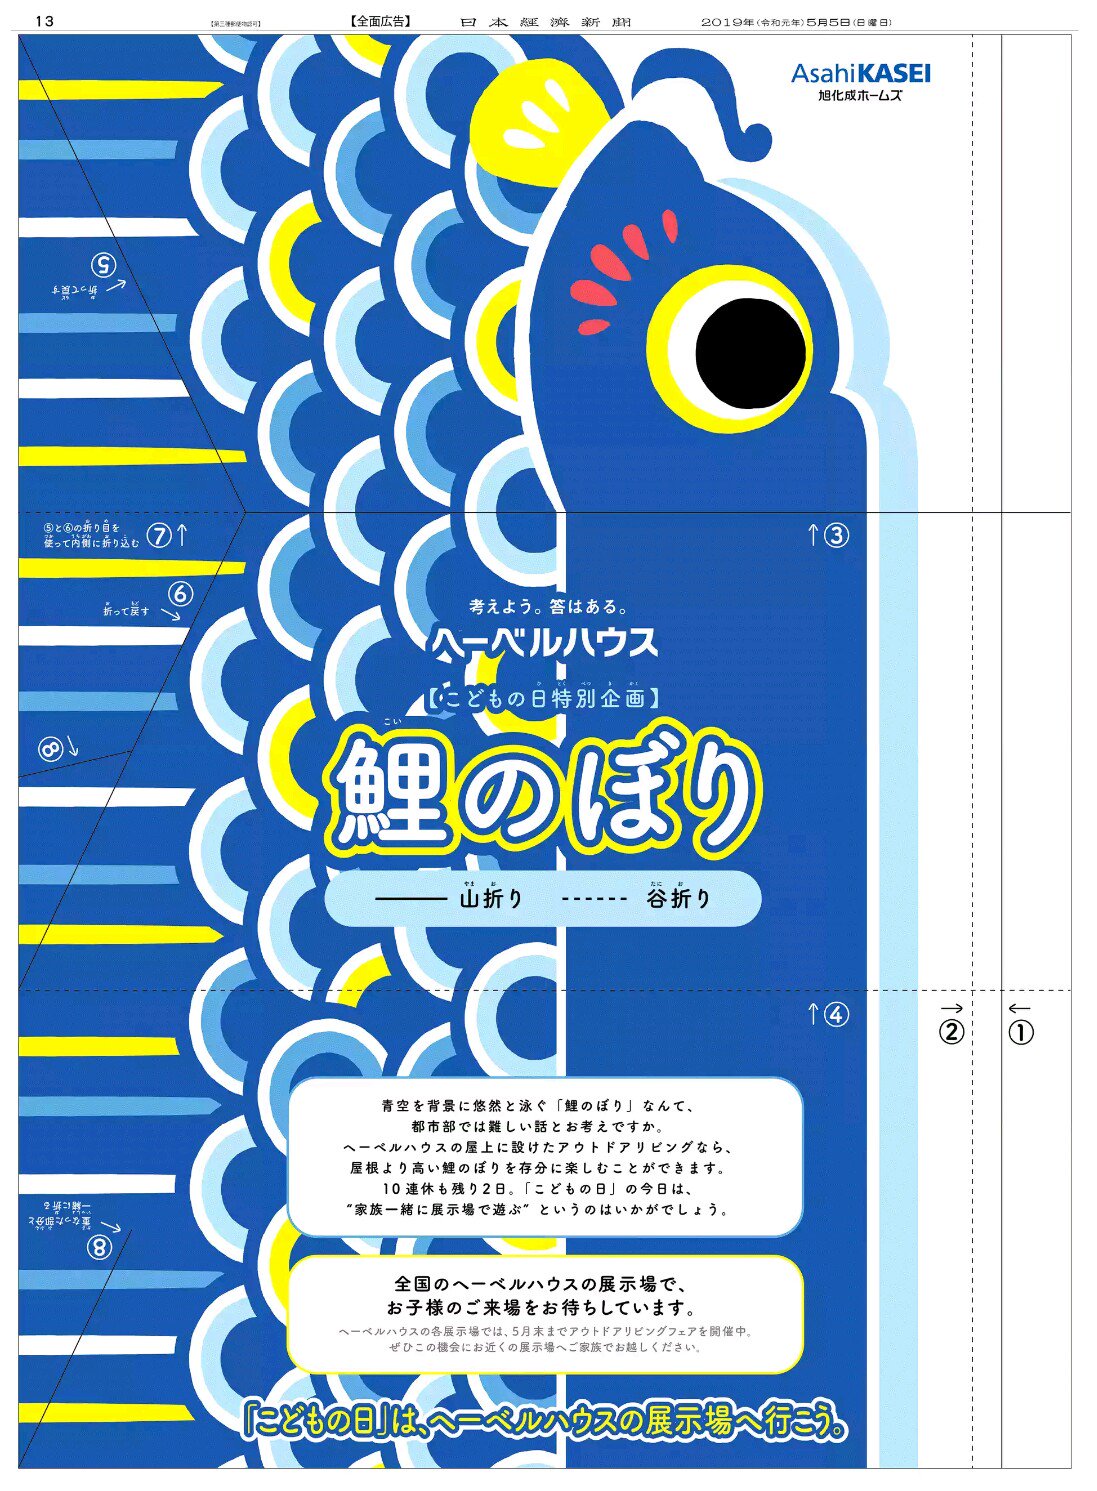 Nikkei Brand Voice 日本経済新聞の広告紹介アカウント 5 5掲載の旭化成ホームズの広告です 昔 こどもの日には新聞紙を折って兜を作ってもらいましたが この広告は番号通りに折ると鯉のぼりが出来上がります 子供の日はヘーベルハウスの展示場に行